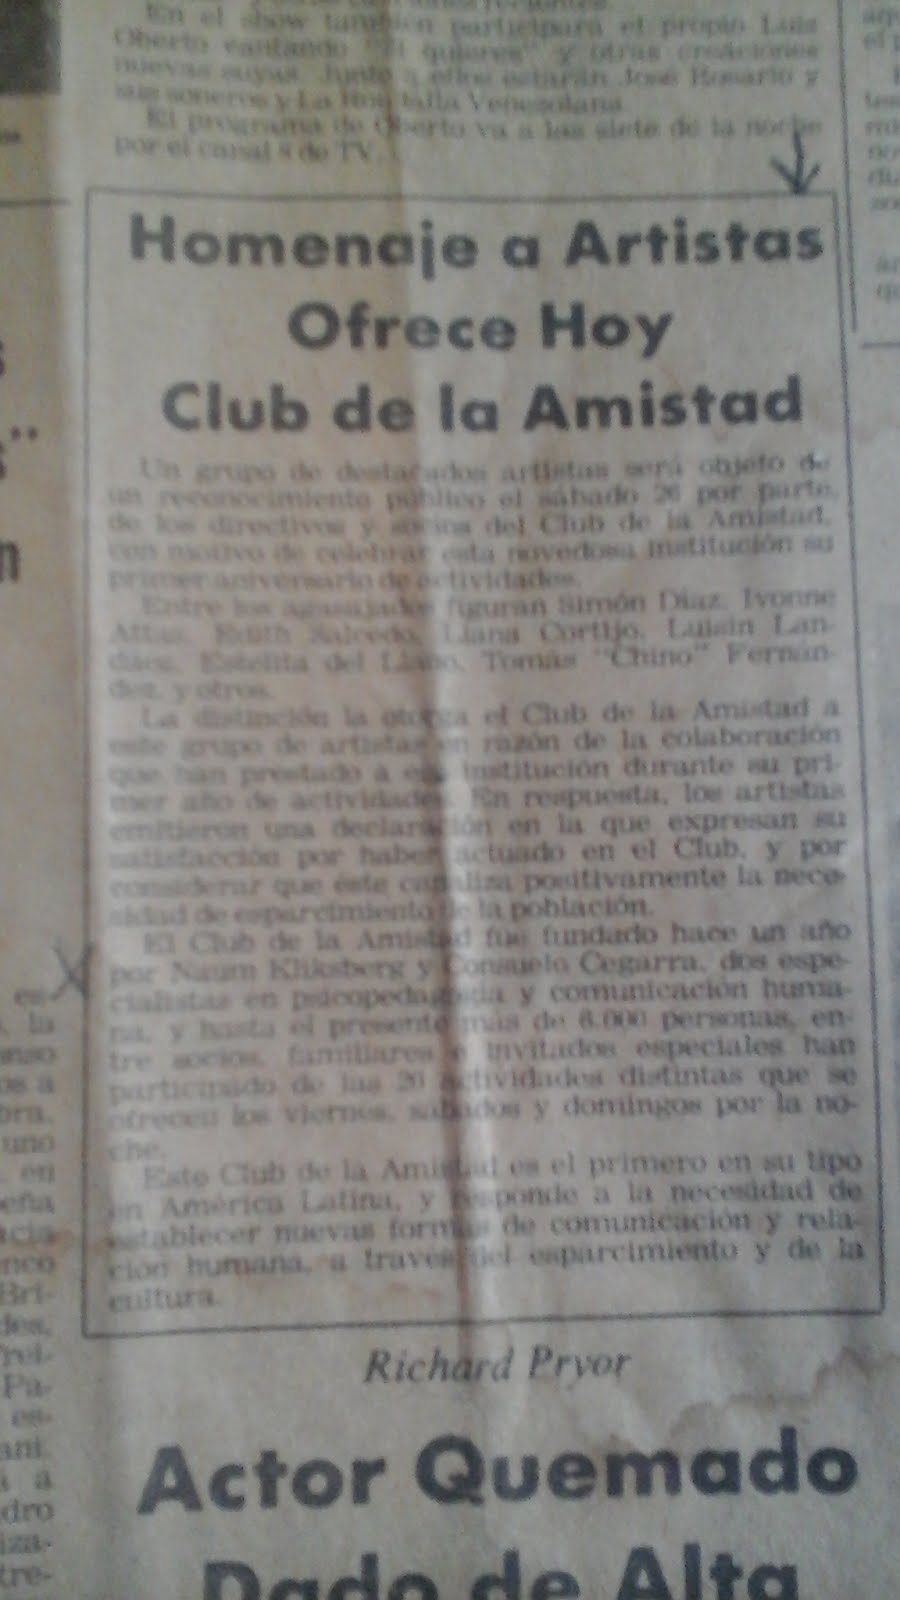 62 - Periódico El Universal,Venezuela, 26/07/1980. Noticia sobre el Club de la Cultura y la Amistad